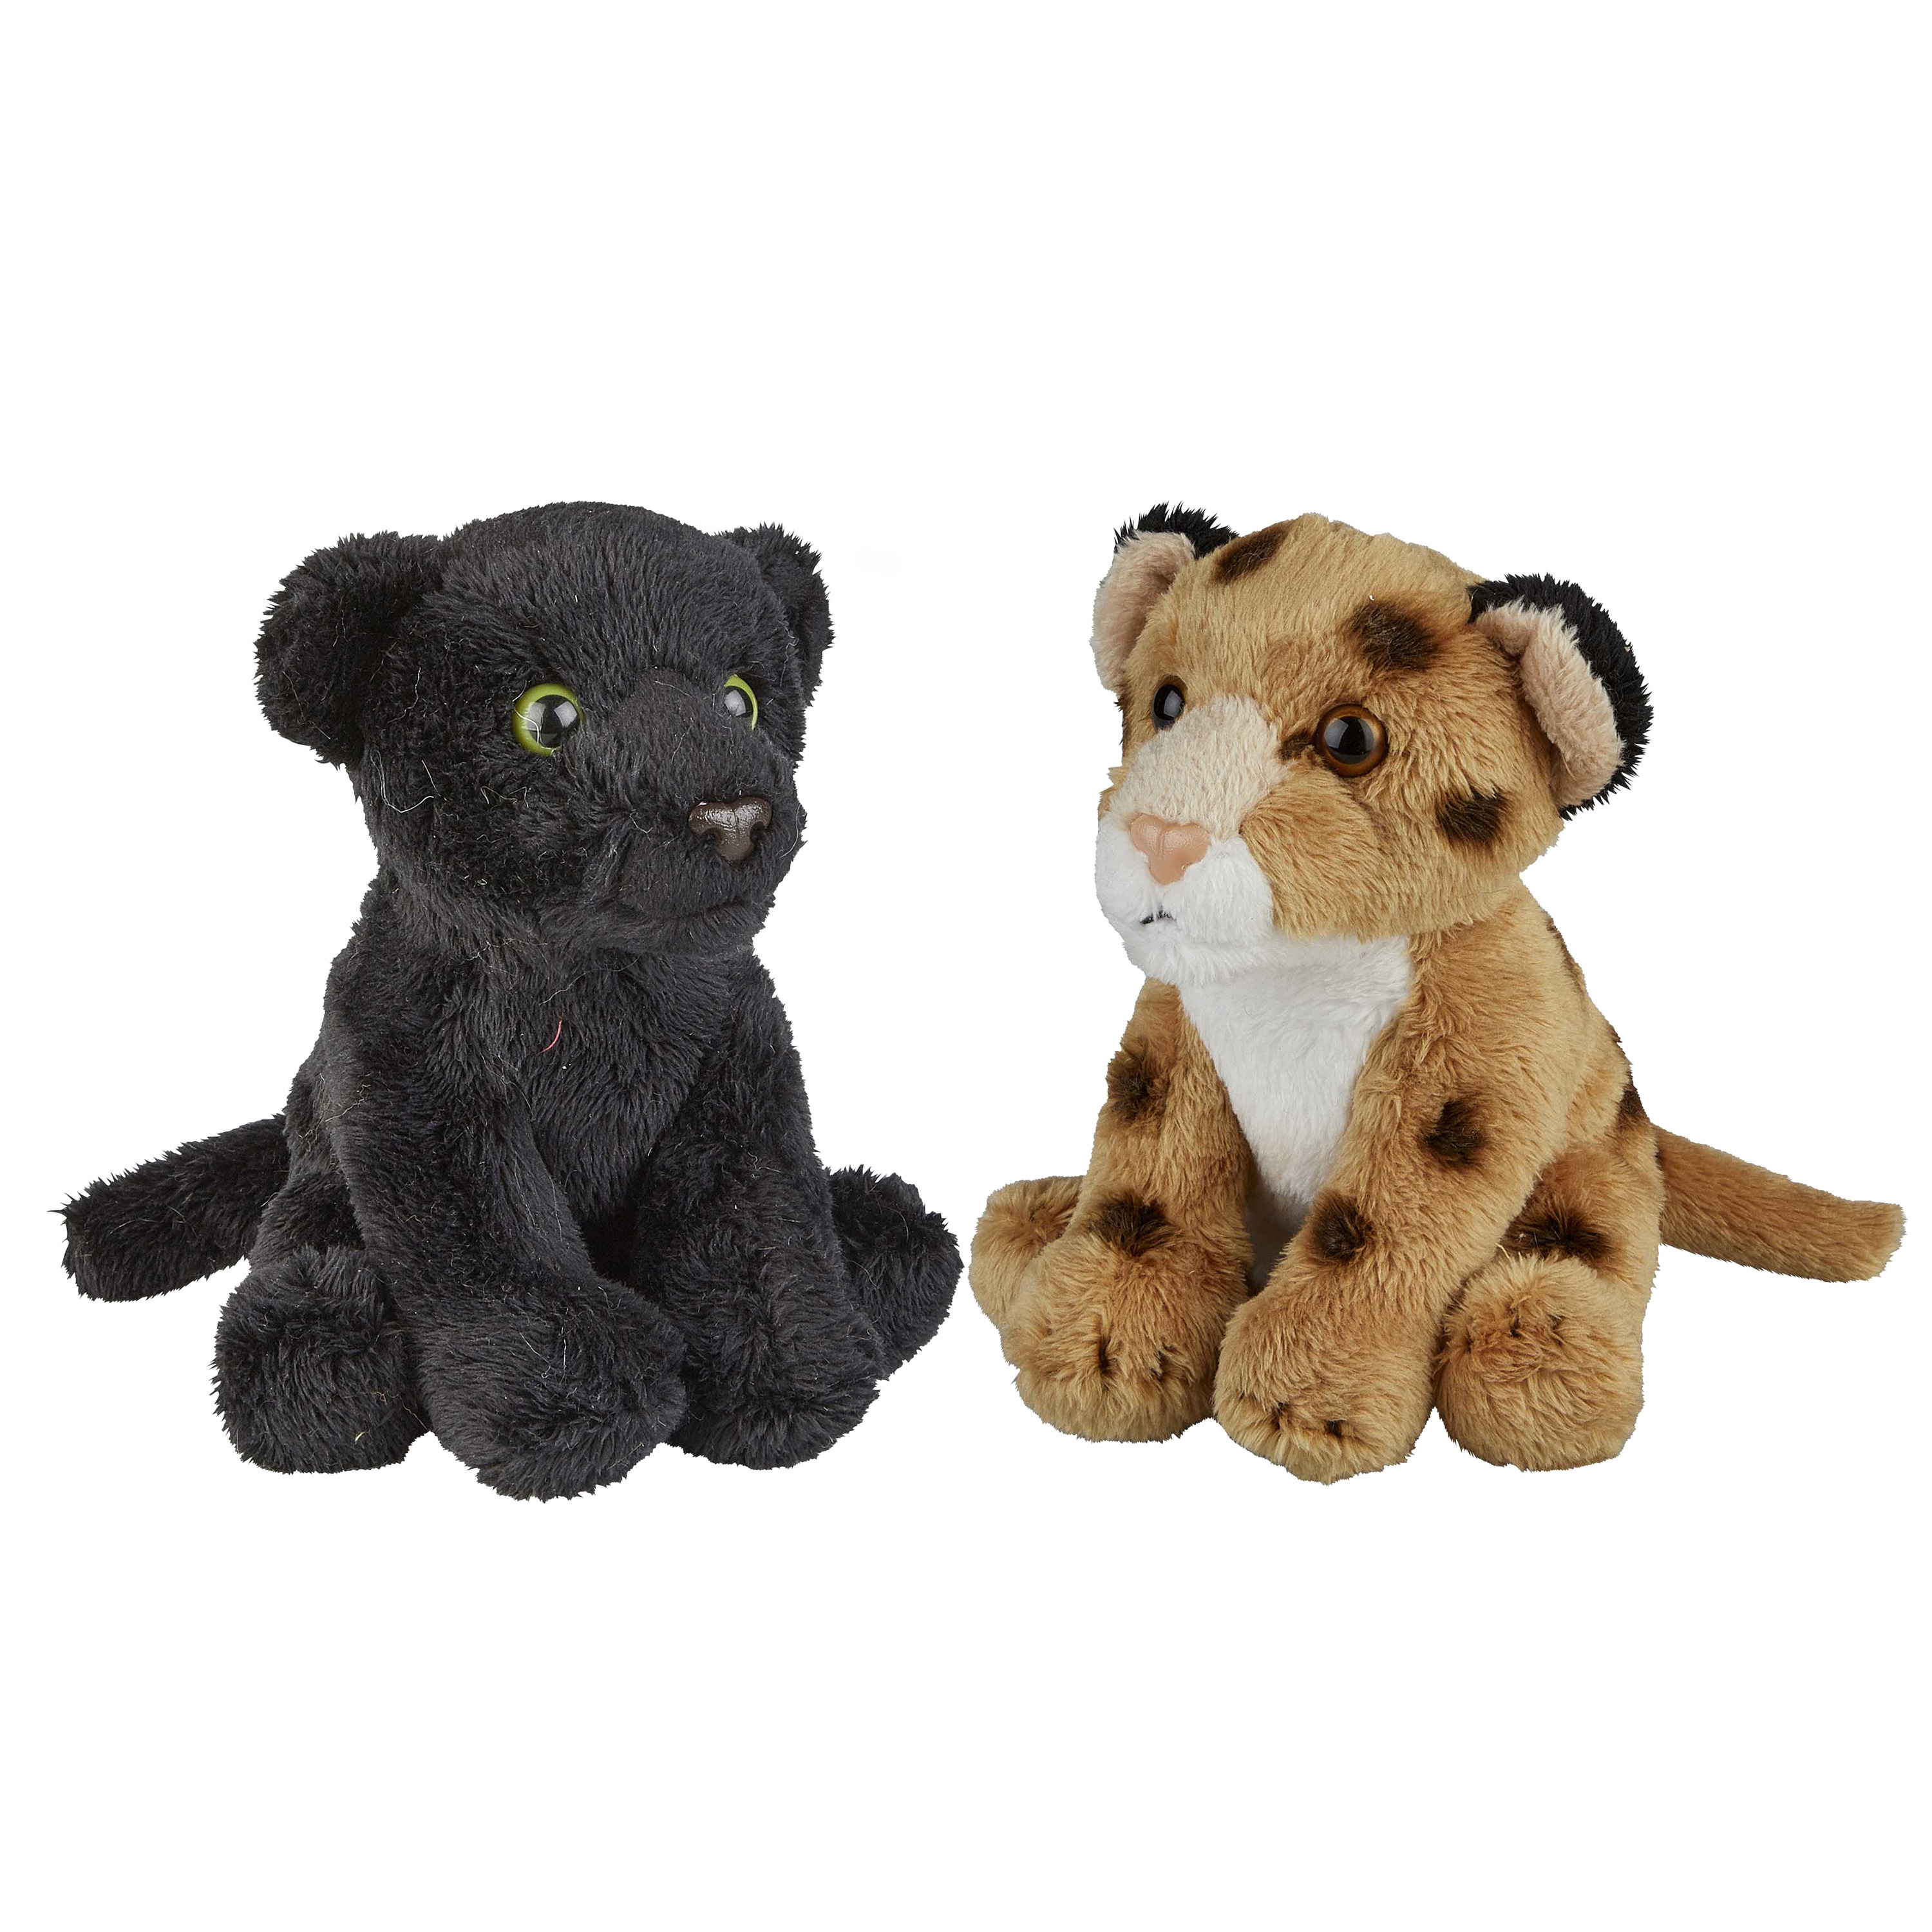 Ravensden Safari dieren serie pluche knuffels 2x stuks - Zwarte Panter en Luipaard van 15 cm -